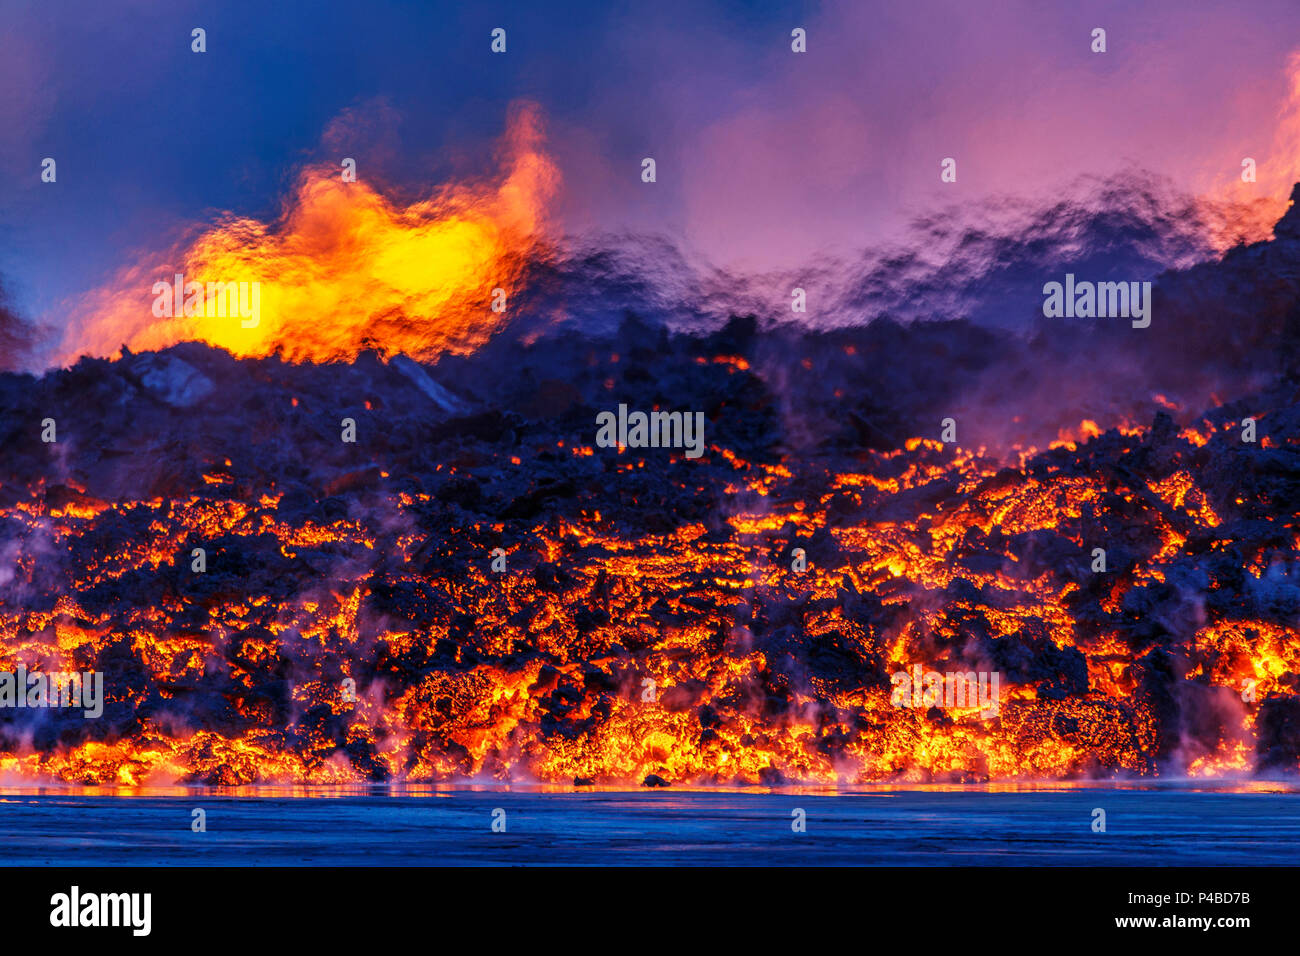 Glühende Lava aus dem Ausbruch an der Holuhraun Riss, in der Nähe des Bardarbunga Vulkan, Island. Eine Nahaufnahme Nacht Blick auf den Lavafluss. Wärme aus der Lava verzerrt den Blick auf die Brunnen in der Ferne. August 29, 2014, ein Riss Eruption in Holuhraun am nördlichen Ende der Magma eindringen, das nach Norden gezogen hatte begonnen, von der Bardarbunga Vulkan. Ist ein stratovulkan Bardarbunga unter dem Vatnajökull, Islands größten Gletscher entfernt. Bild Datum - September 2, 2014 Stockfoto